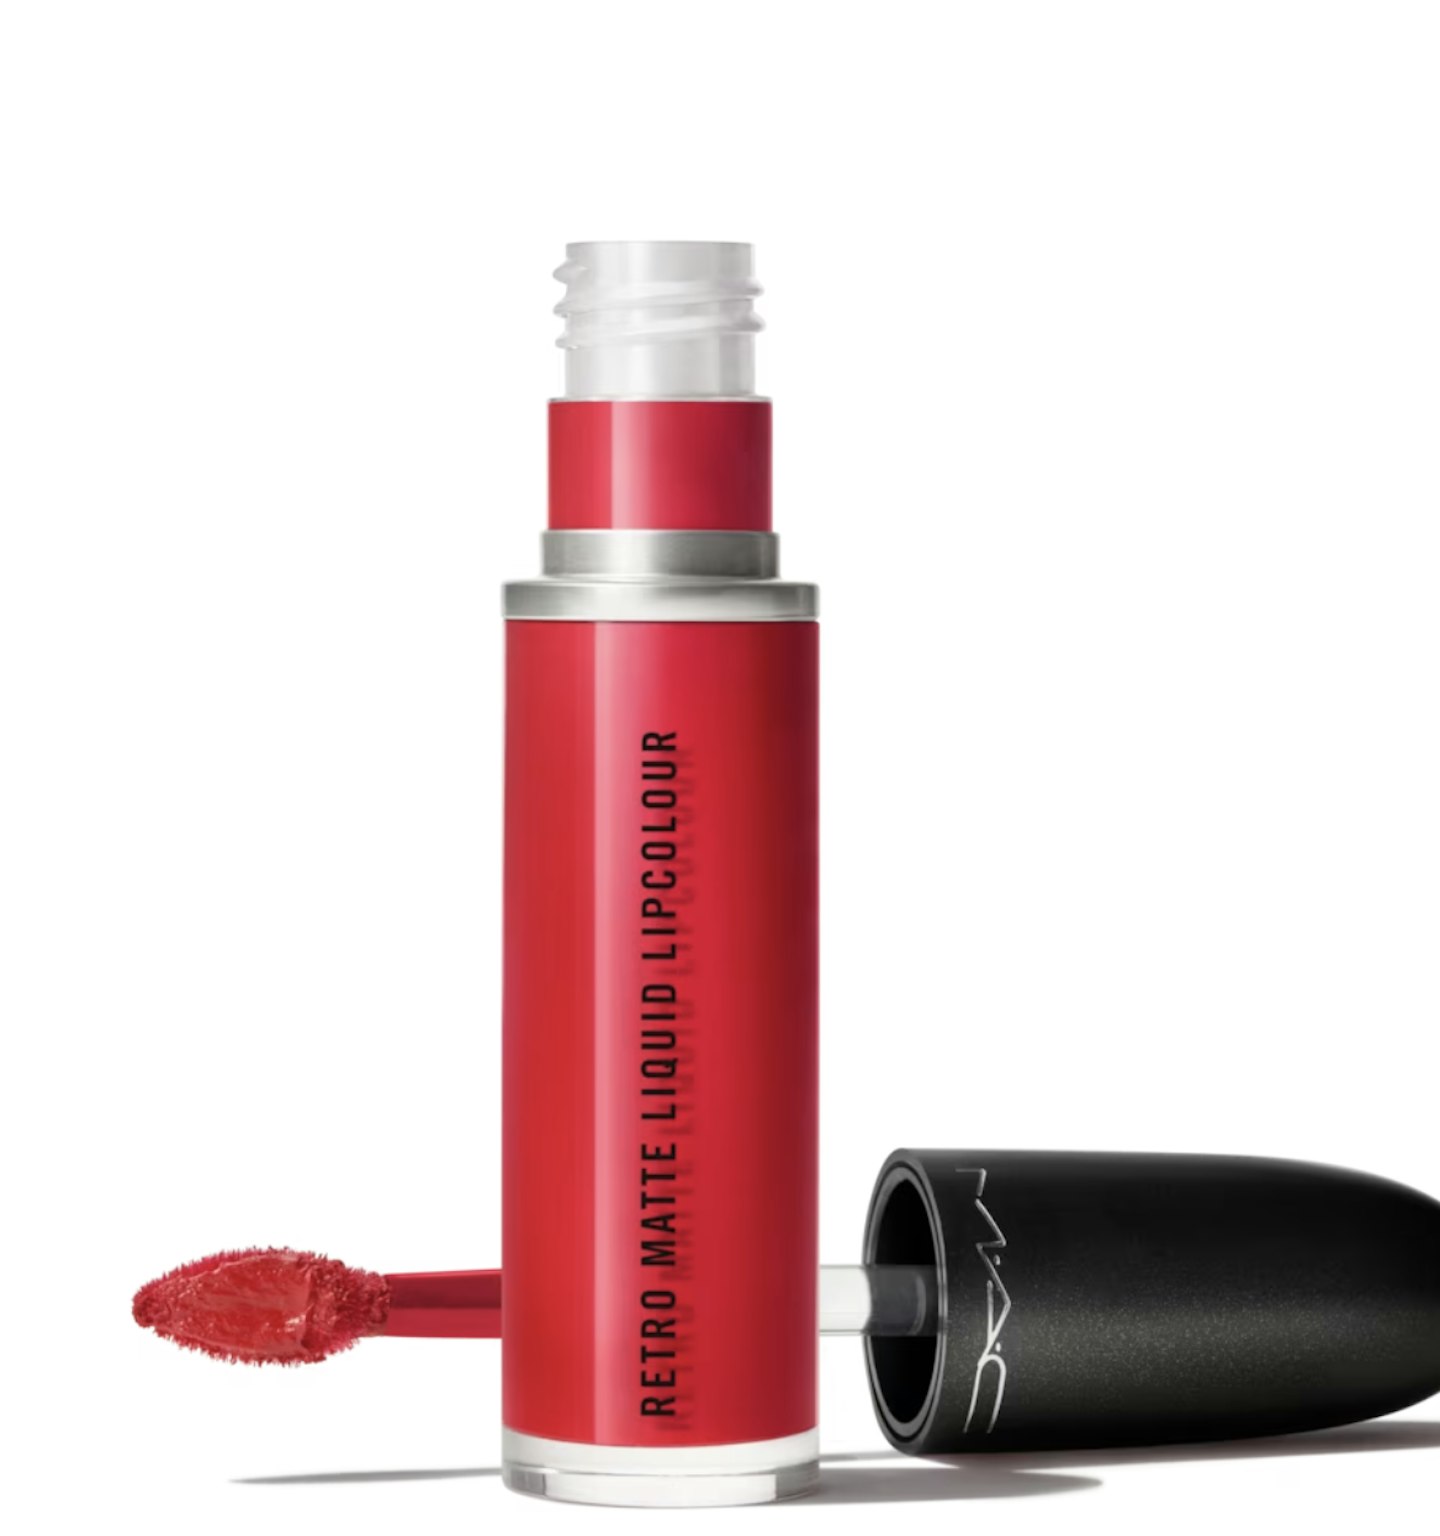 mac feels so grand red lipstick